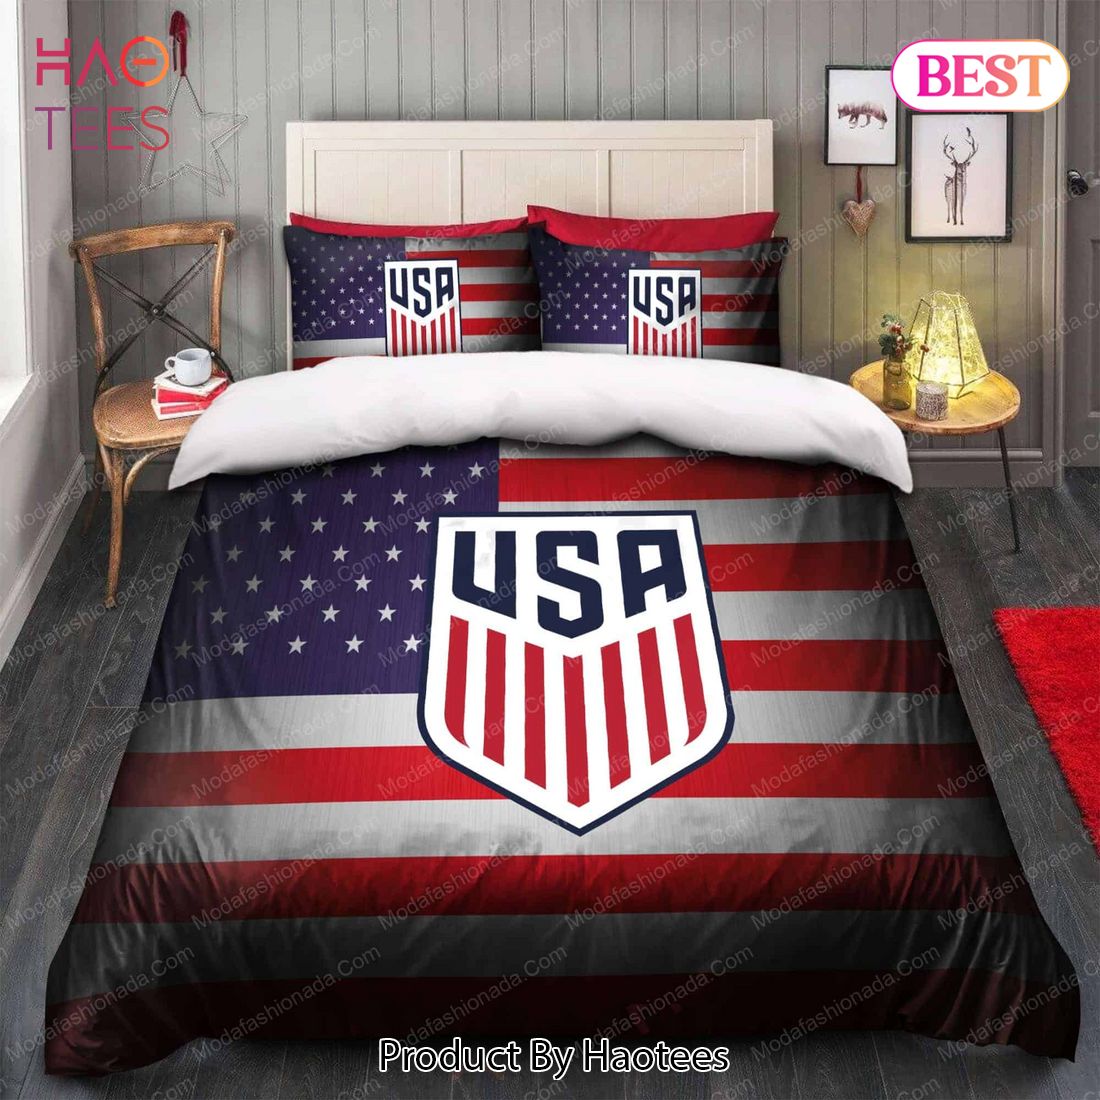 Logo United States Men's National Soccer Team Bedding Sets Bed Sets, Bedroom Sets, Comforter Sets, Duvet Cover, Bedspread